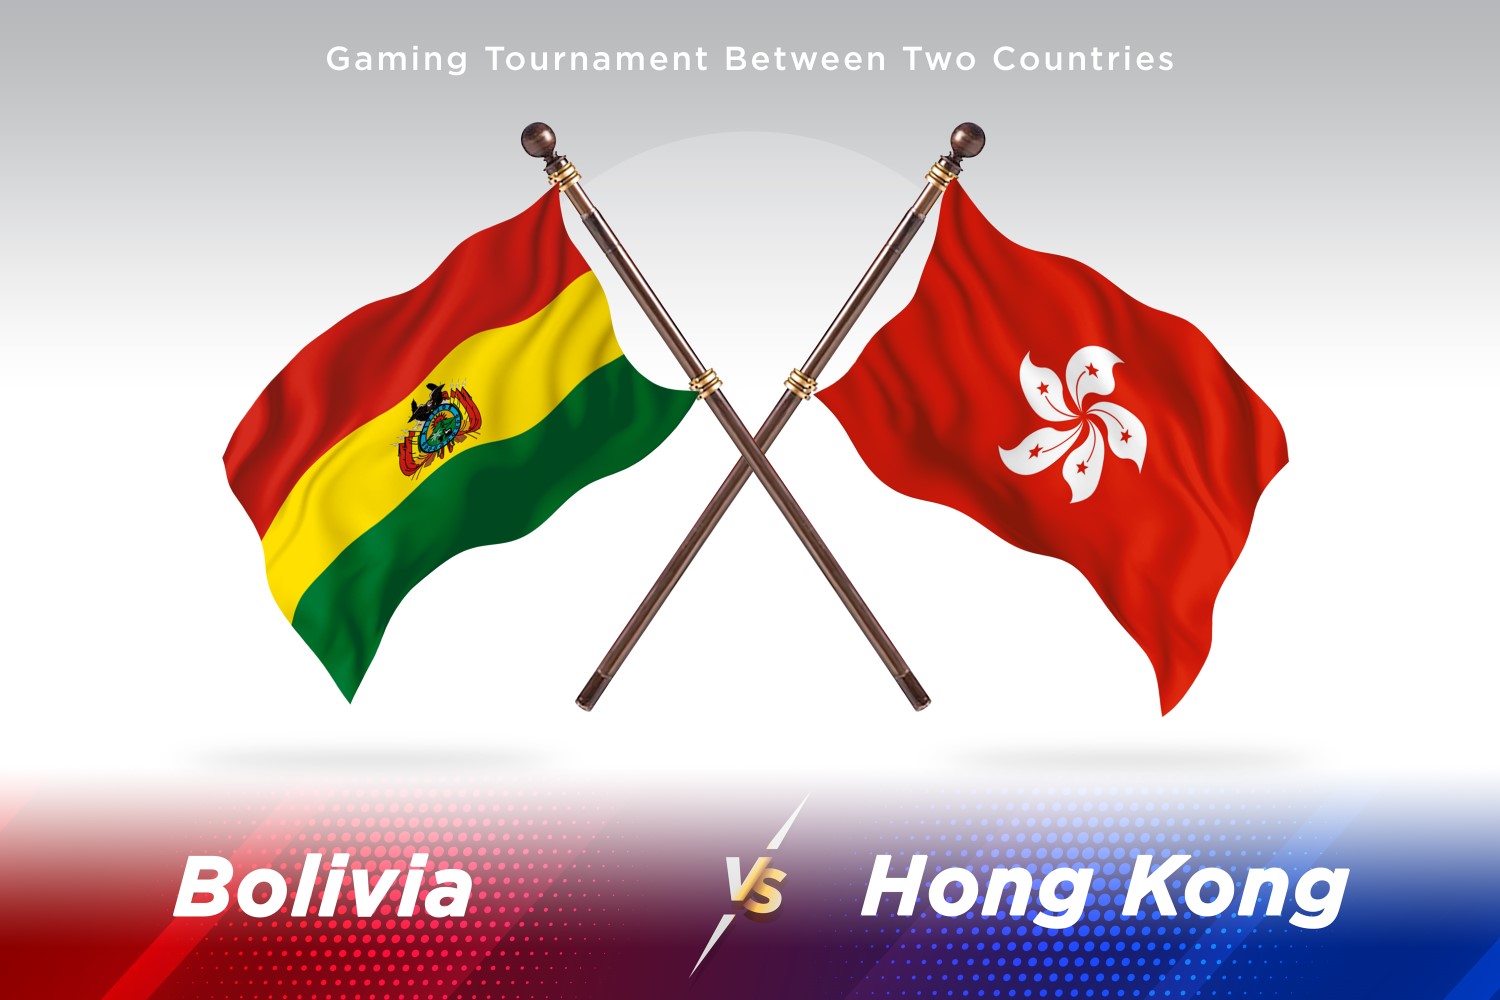 Bolivia versus Hong Kong Two Flags